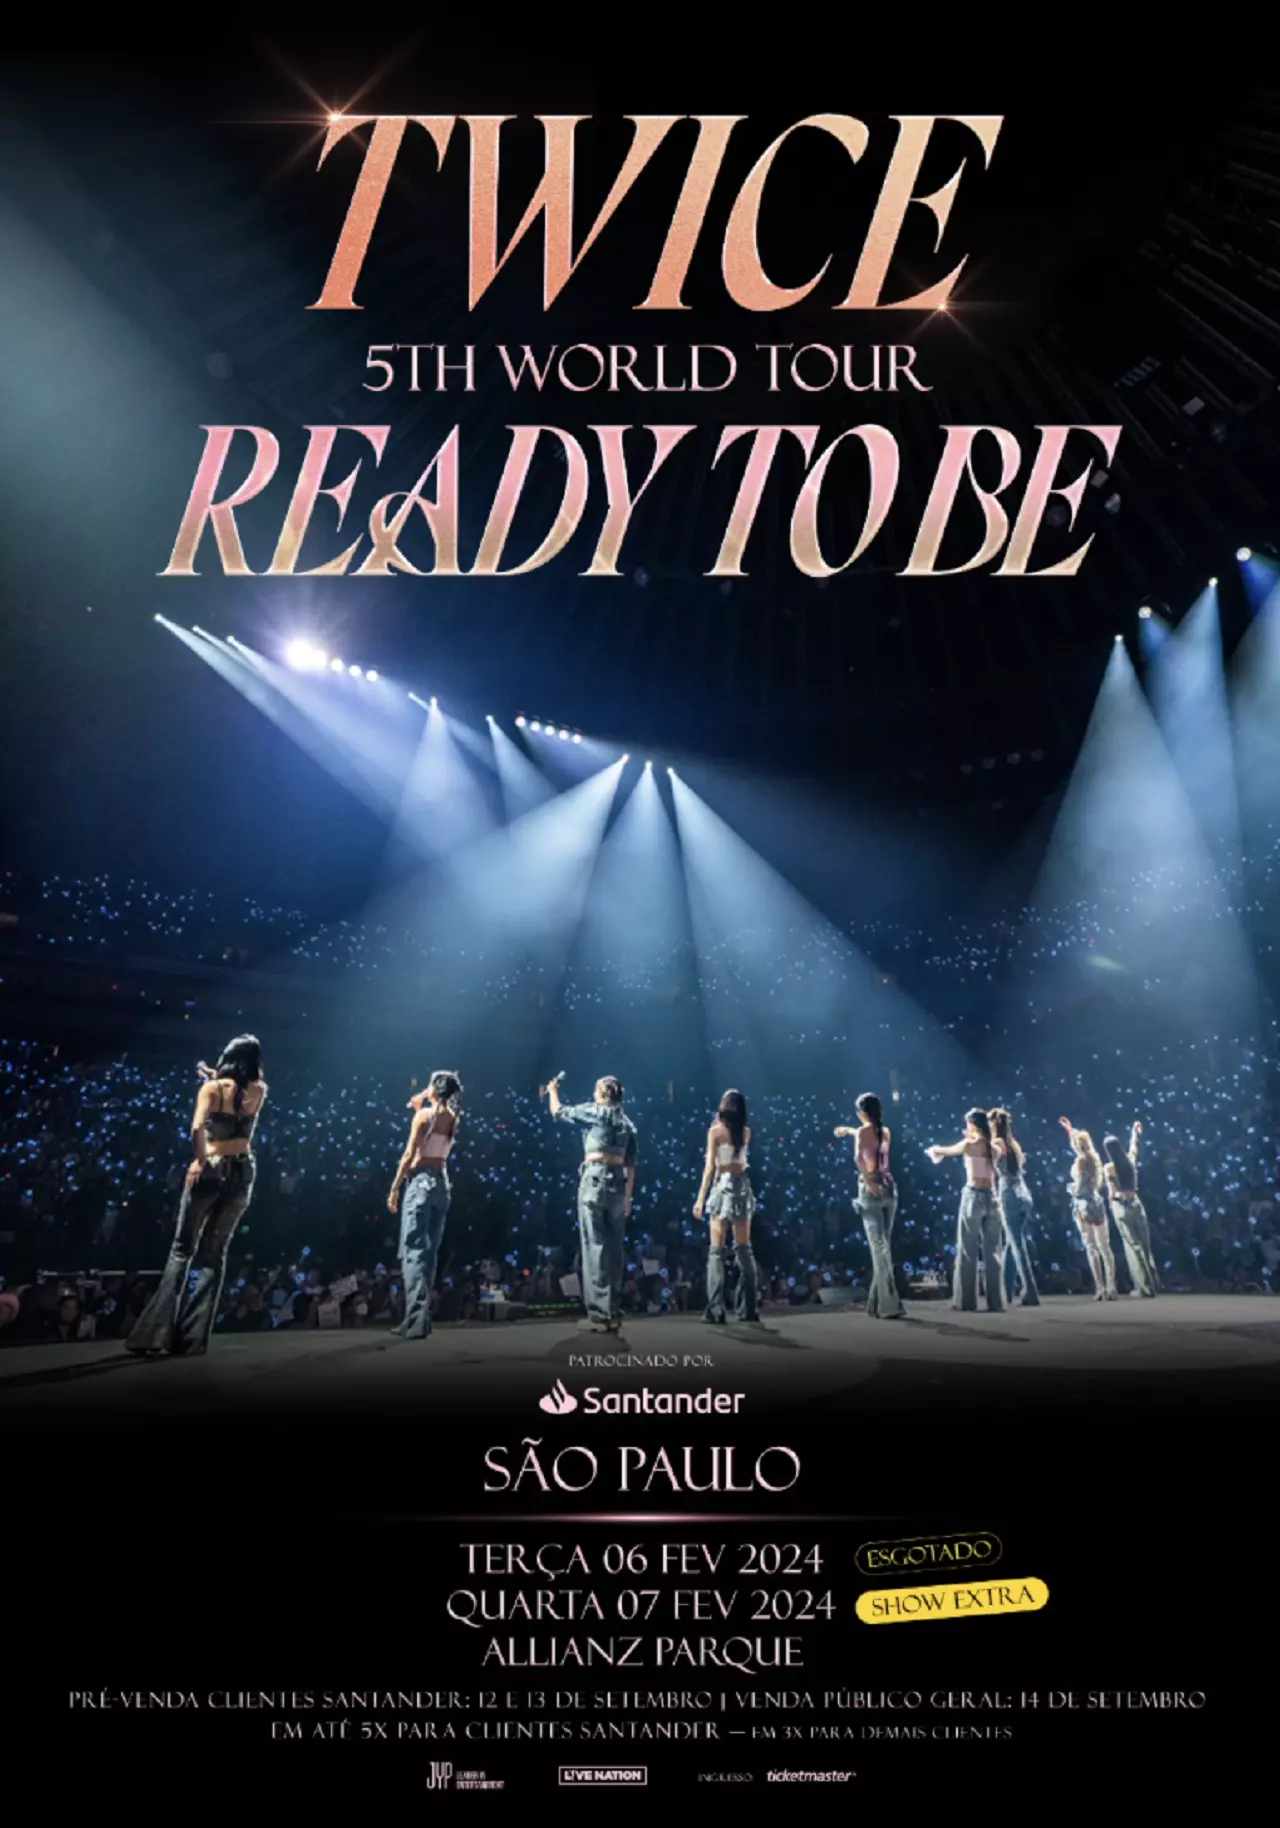 Twice anuncia show extra no Brasil após esgotar primeiro dia